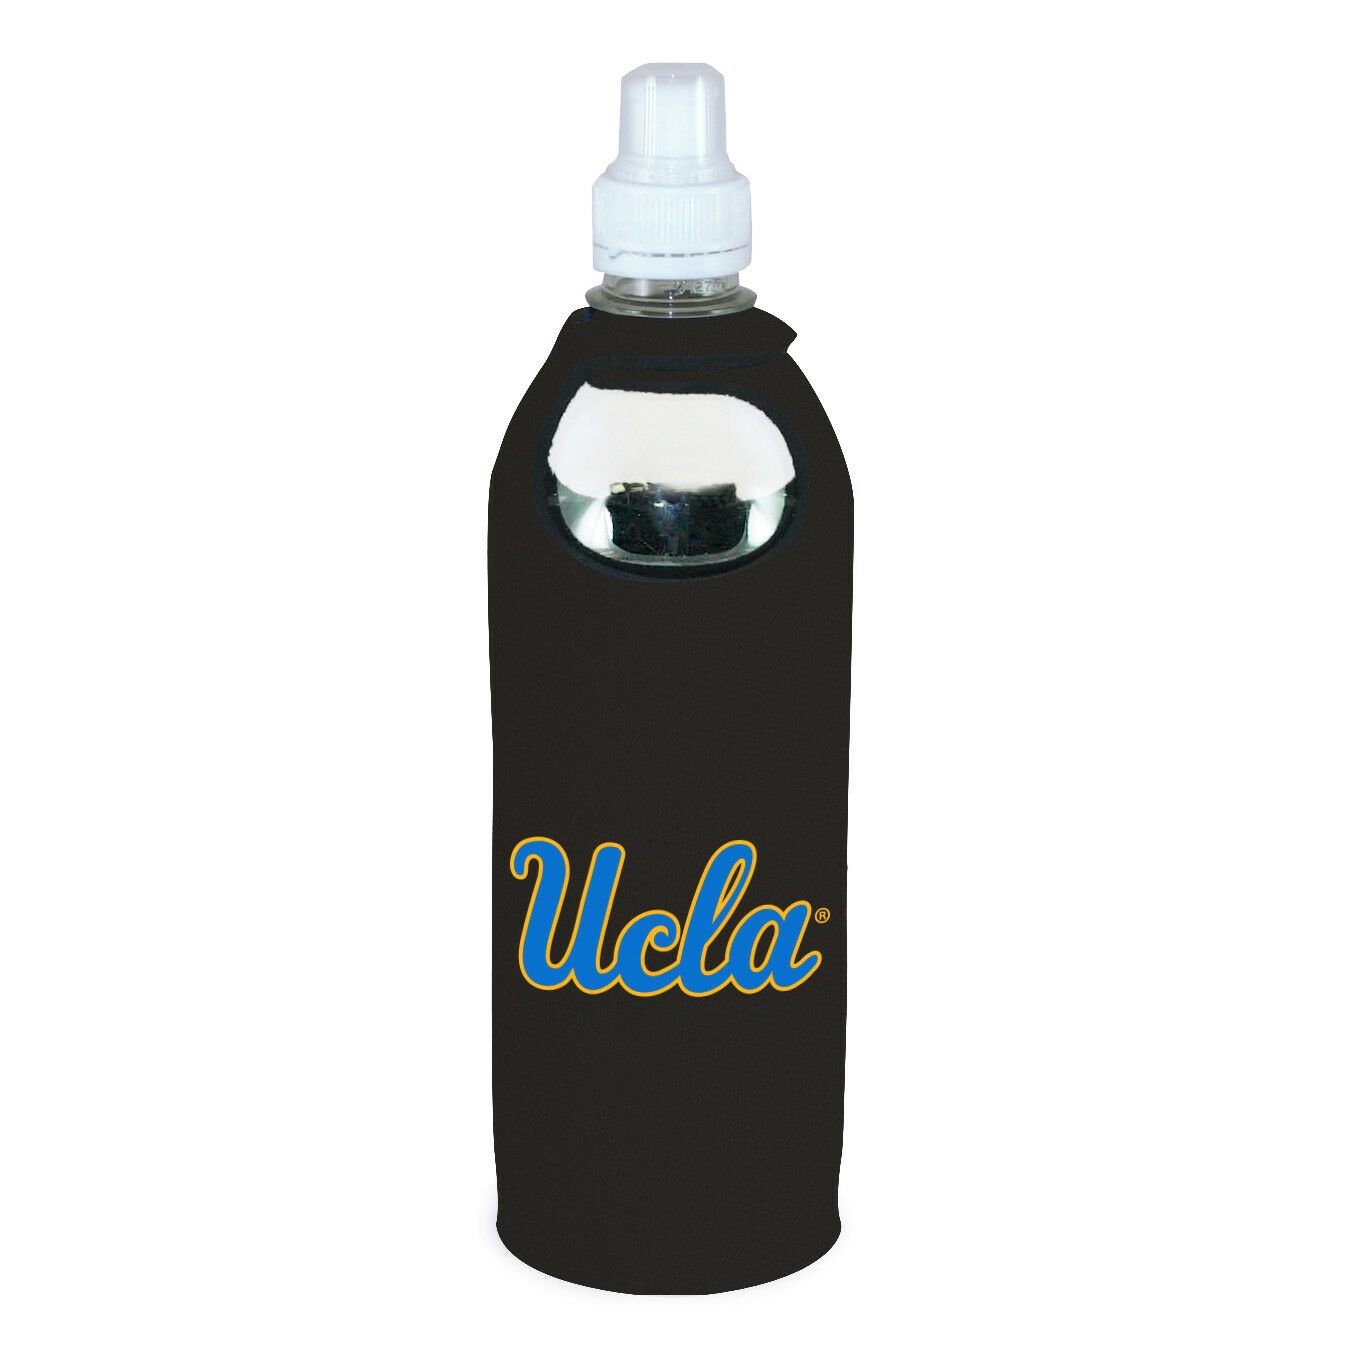 UCLA Bruins 1/2 Liter Water Soda Bottle Koozie Holder Cooler wClip University of